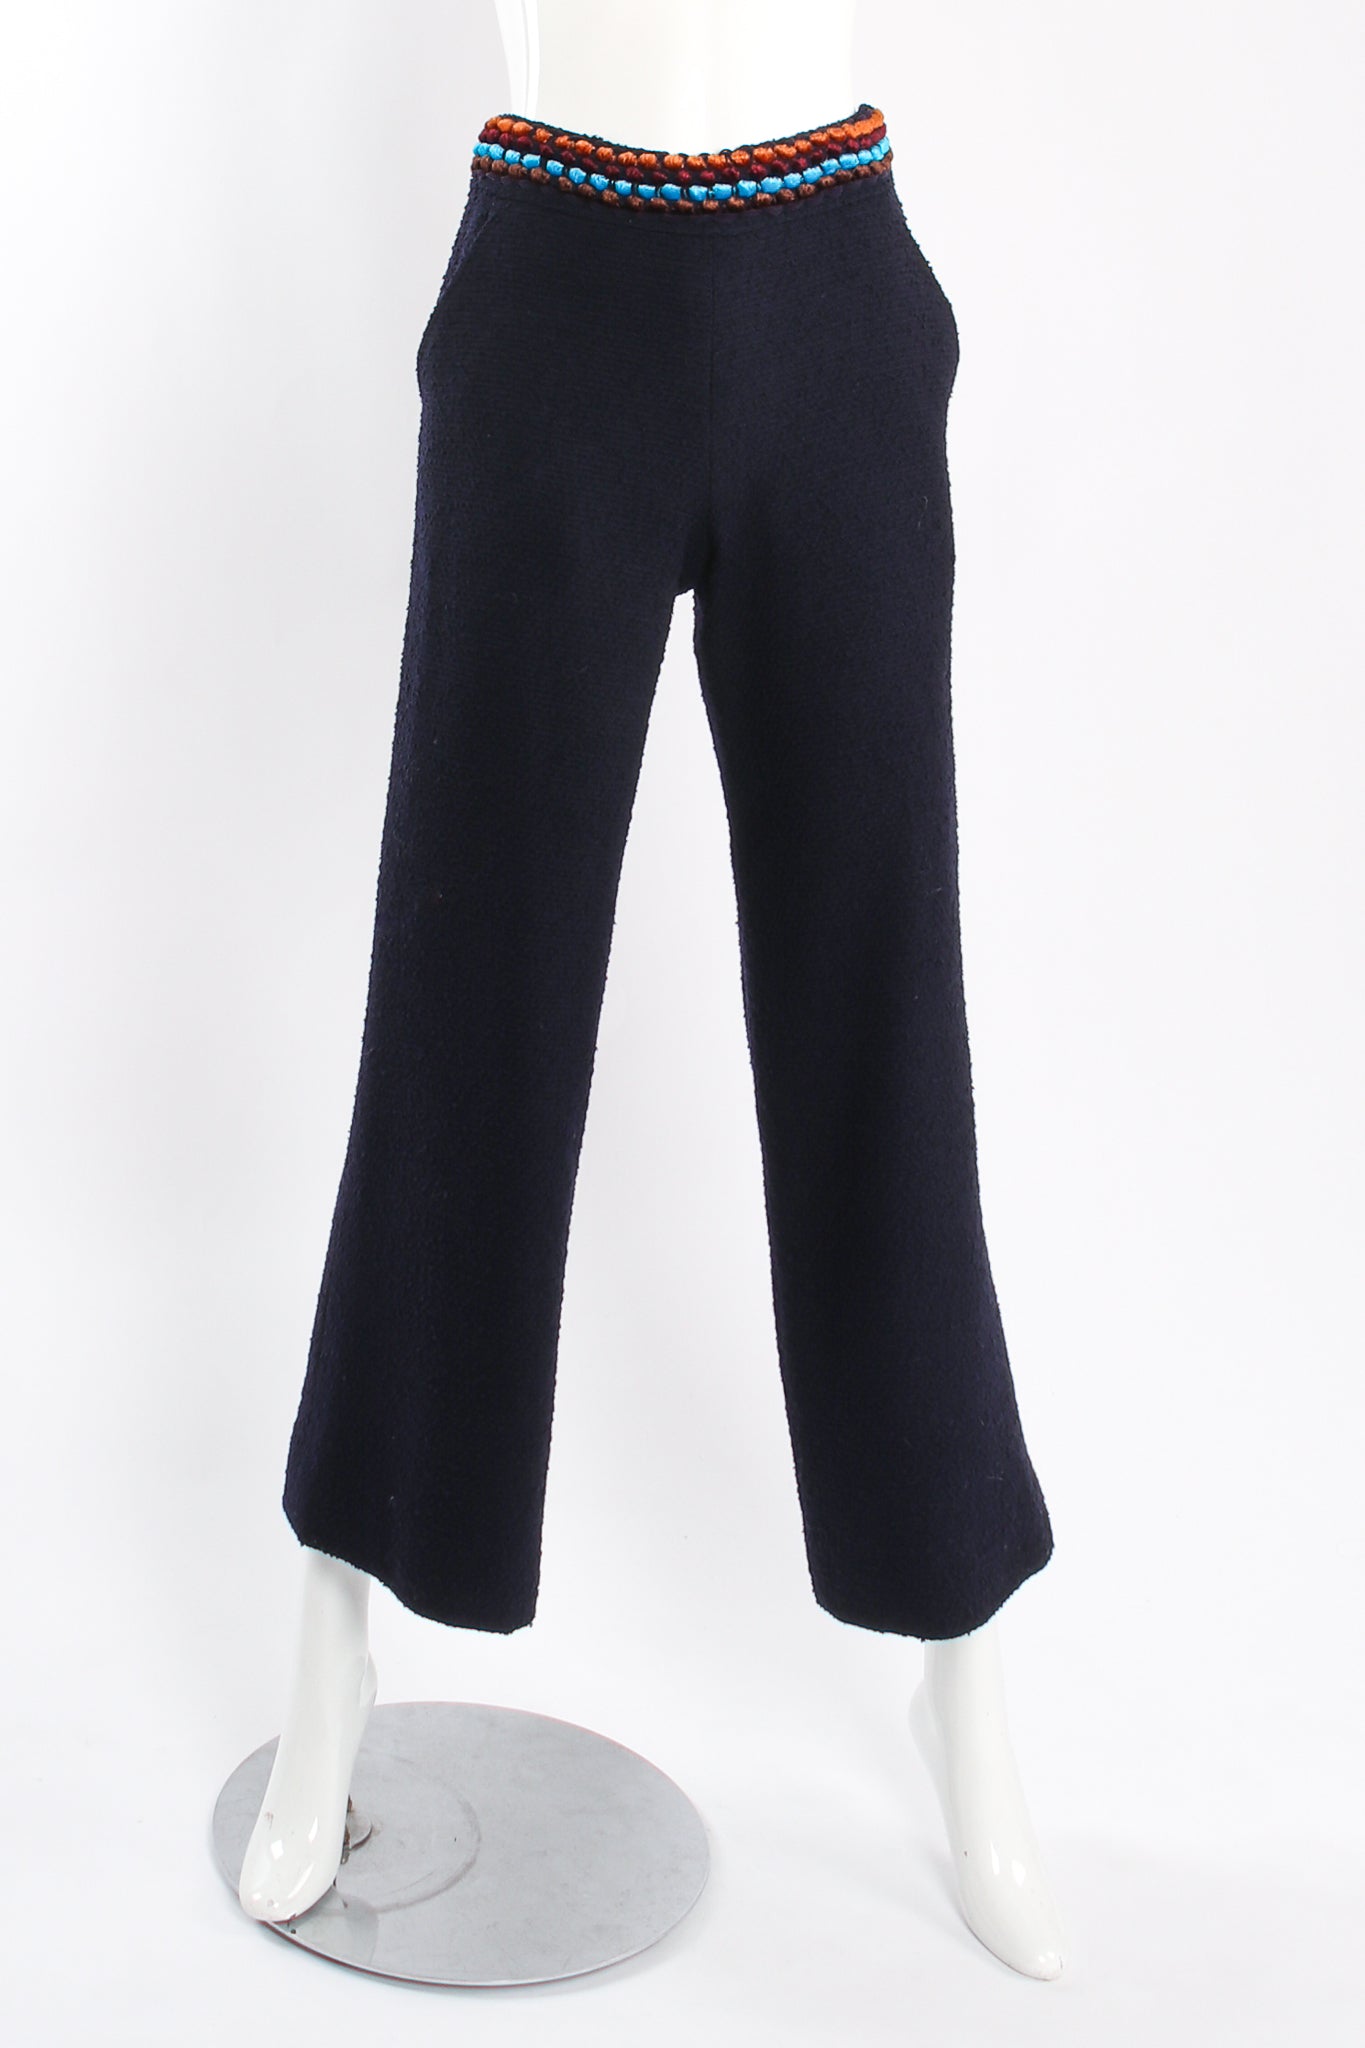 Vintage Chanel 1997A Chenille Trim Tweed Pant Suit on Mannequin front at Recess LA